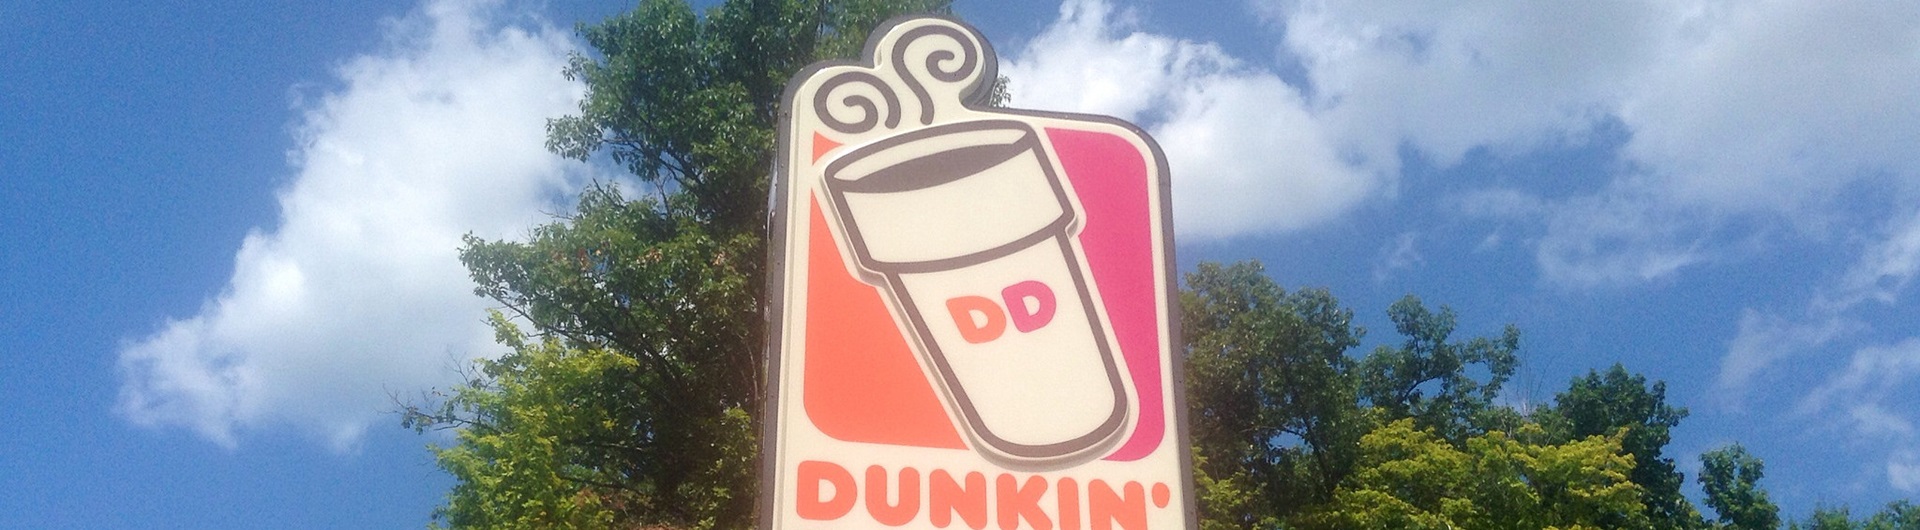 Dunkin’ Donuts: jak AI pomaga sprzedawać kawę i ciastka